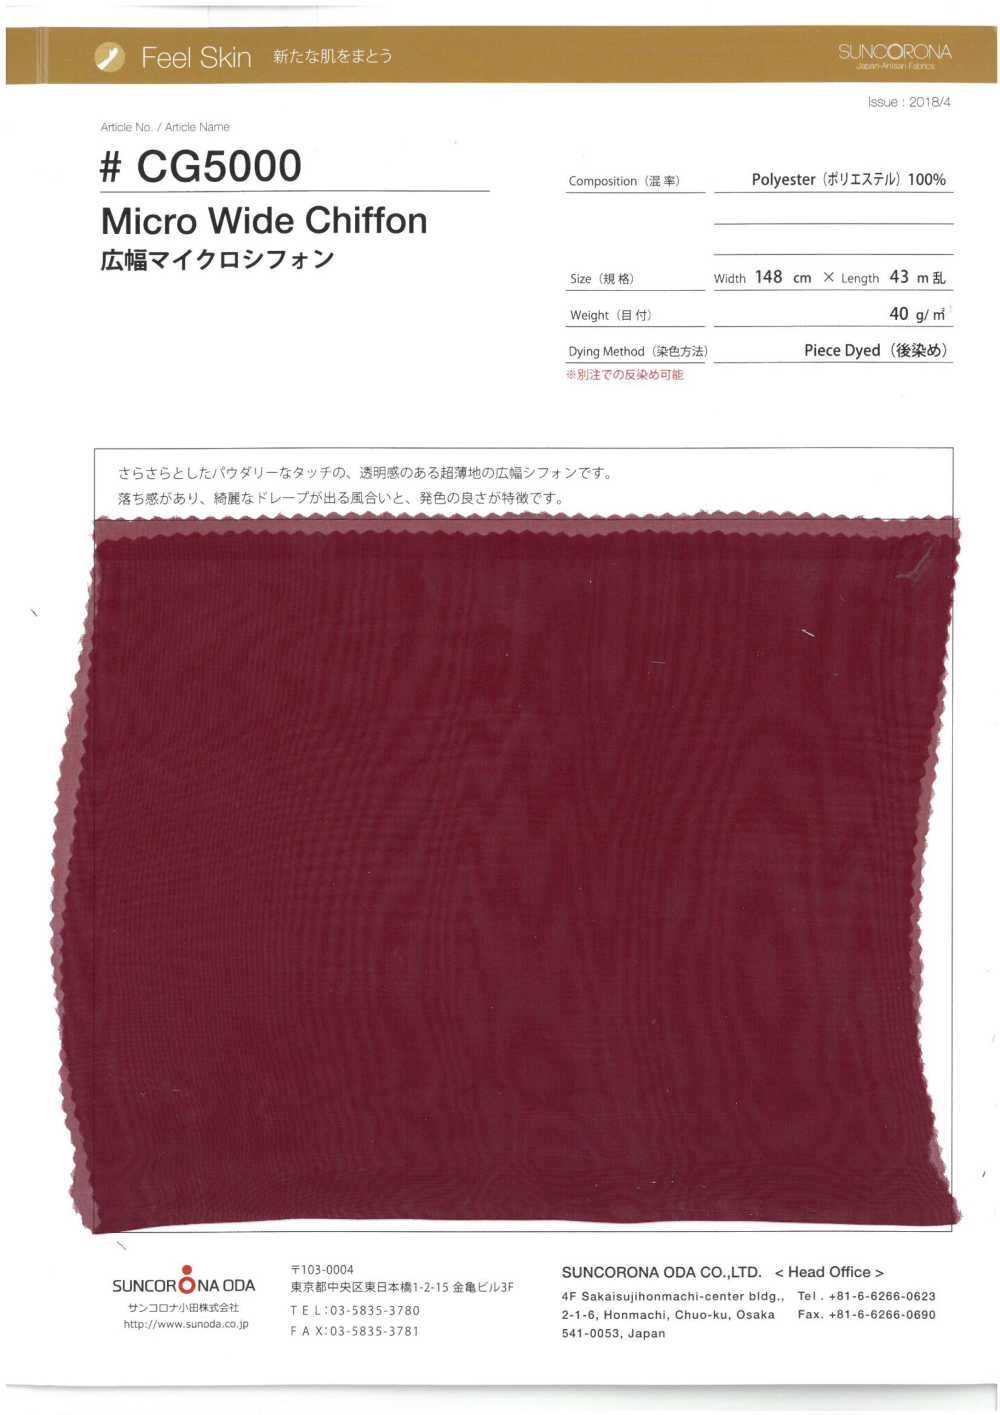 CG5000 Micro Mousseline Grande Largeur[Fabrication De Textile] Suncorona Oda